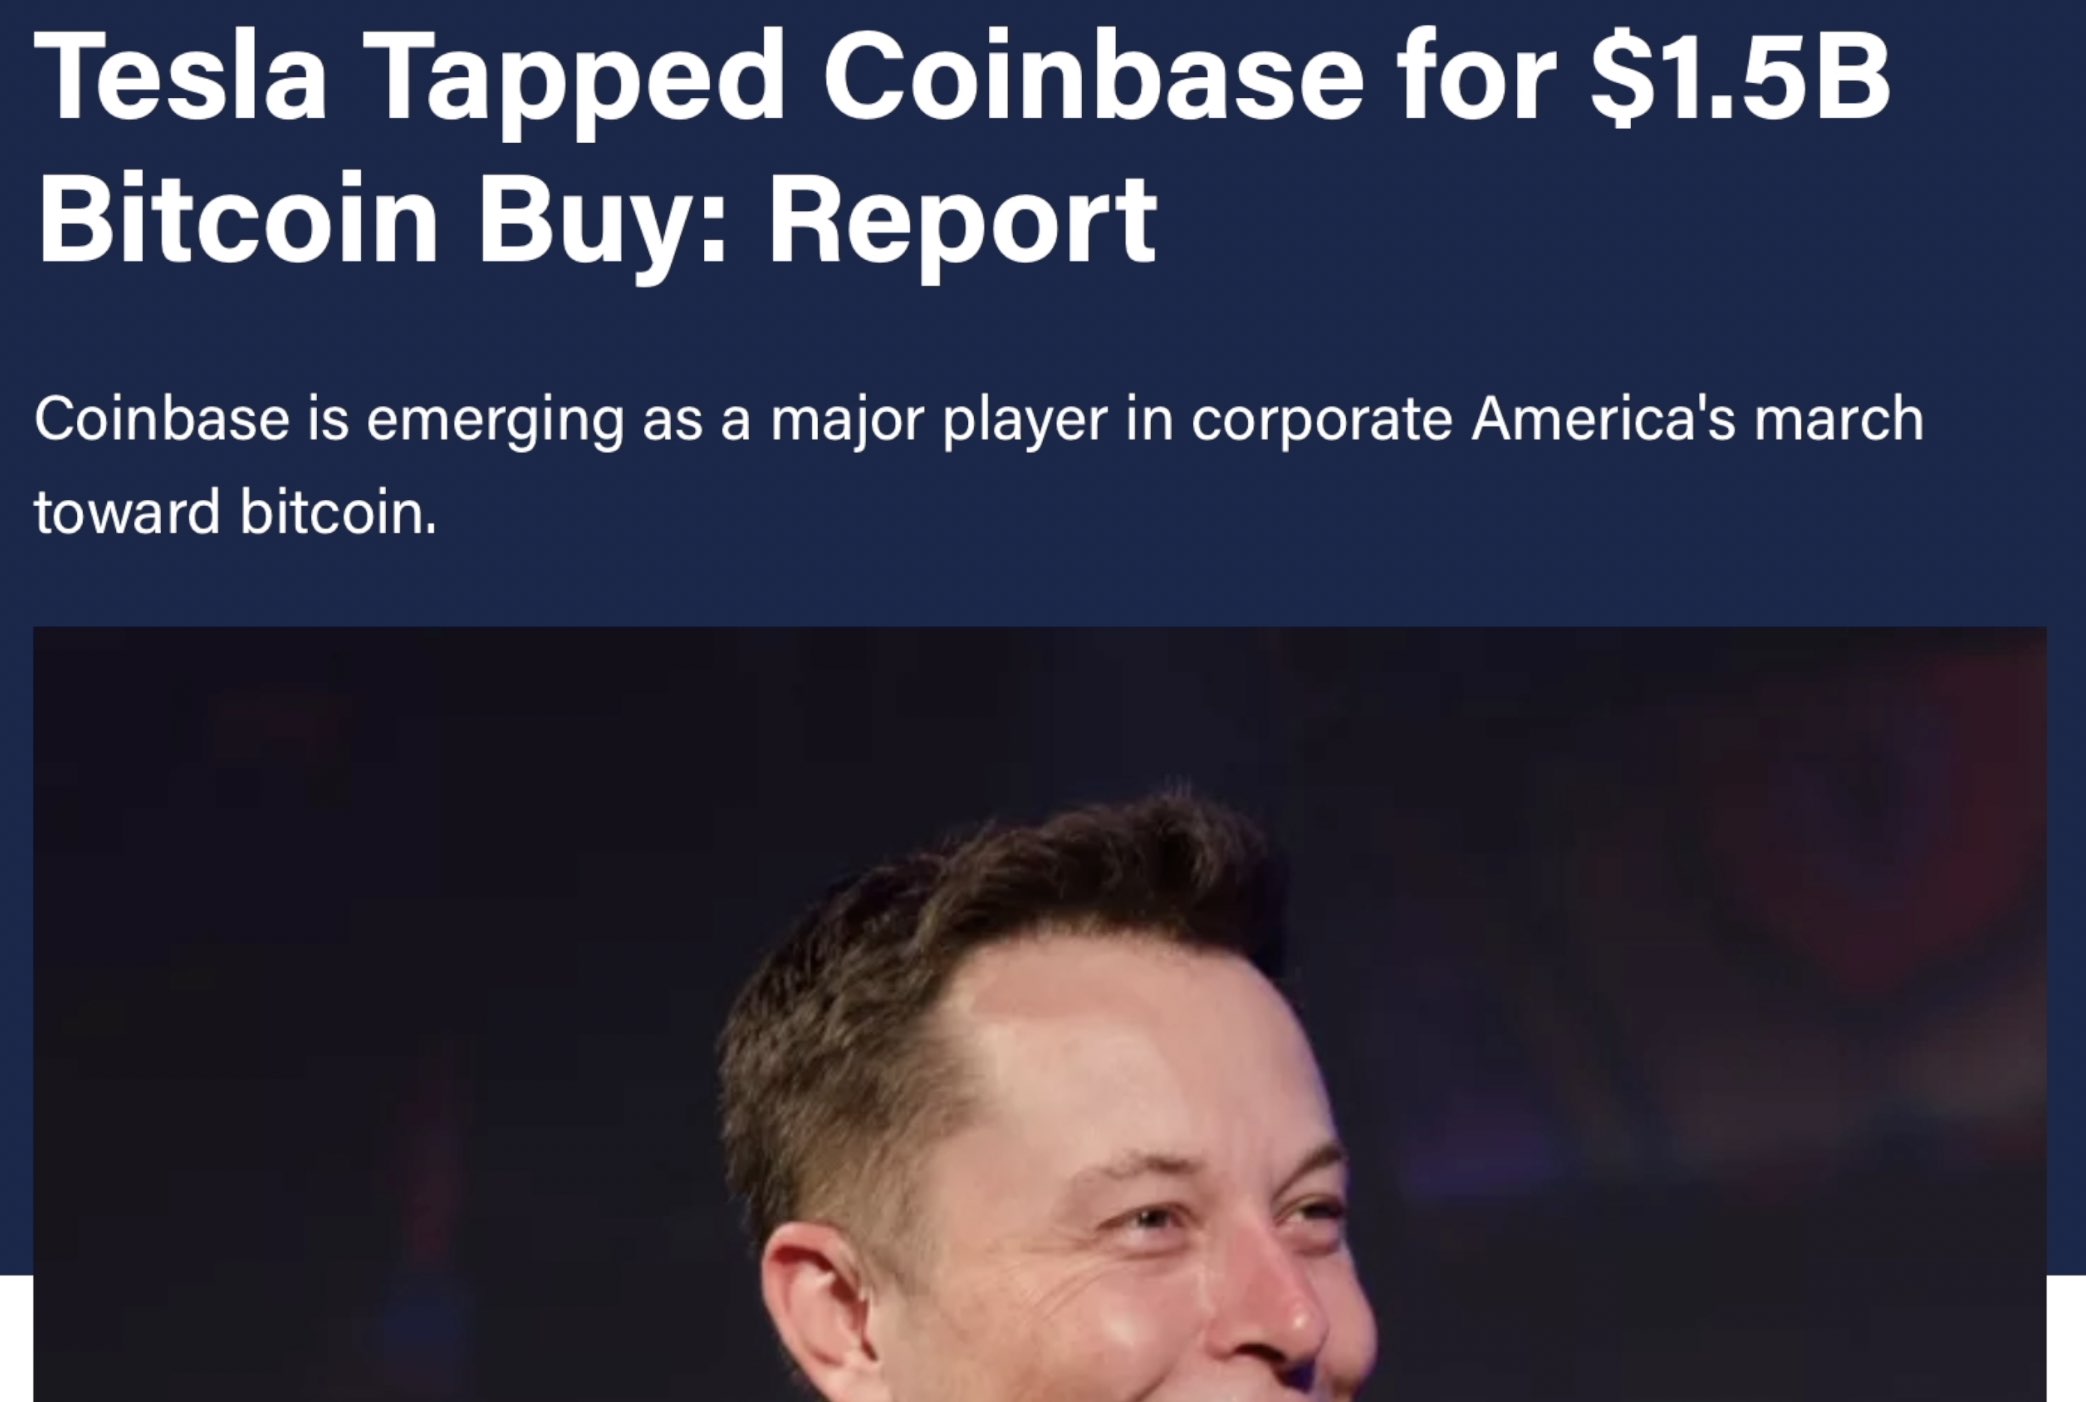 Tesla used Coinbase for $1.5B Bitcoin buy.